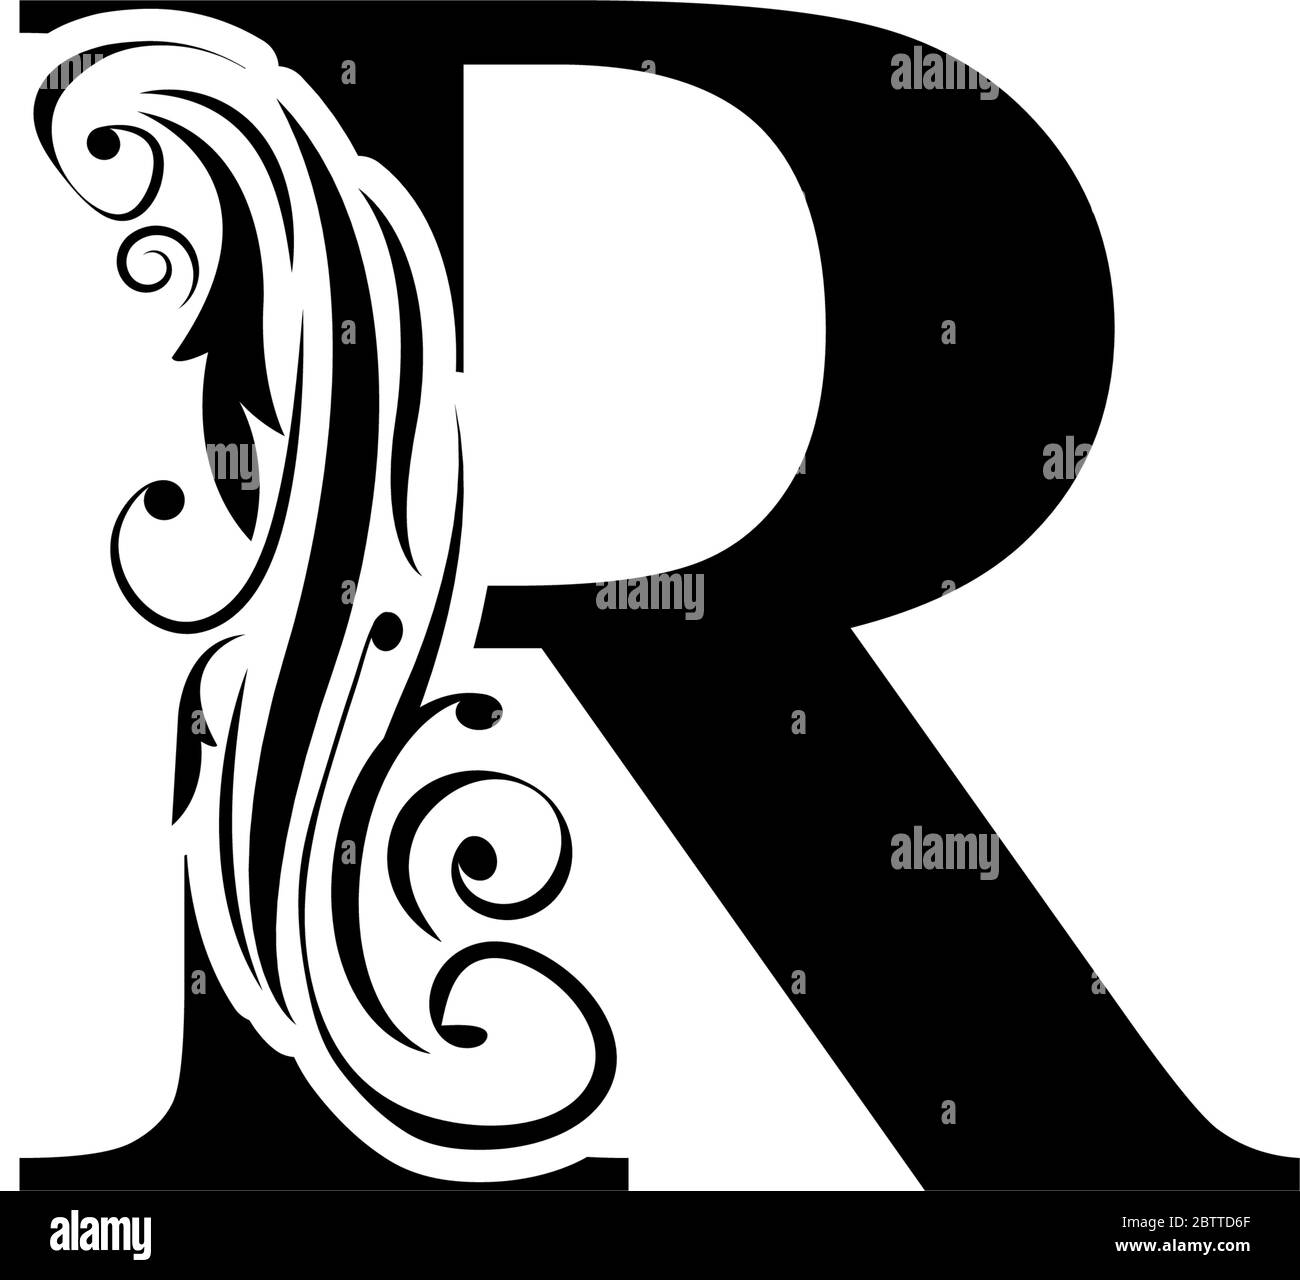 Chữ R cổ điển với trang trí hoa đen mang lại cảm giác sang trọng và đẳng cấp. Nếu bạn muốn sở hữu một logo chữ R nổi bật và độc đáo, hãy tham khảo hình ảnh liên quan. Chúng tôi tin rằng bạn sẽ yêu thích chúng ngay từ cái nhìn đầu tiên.